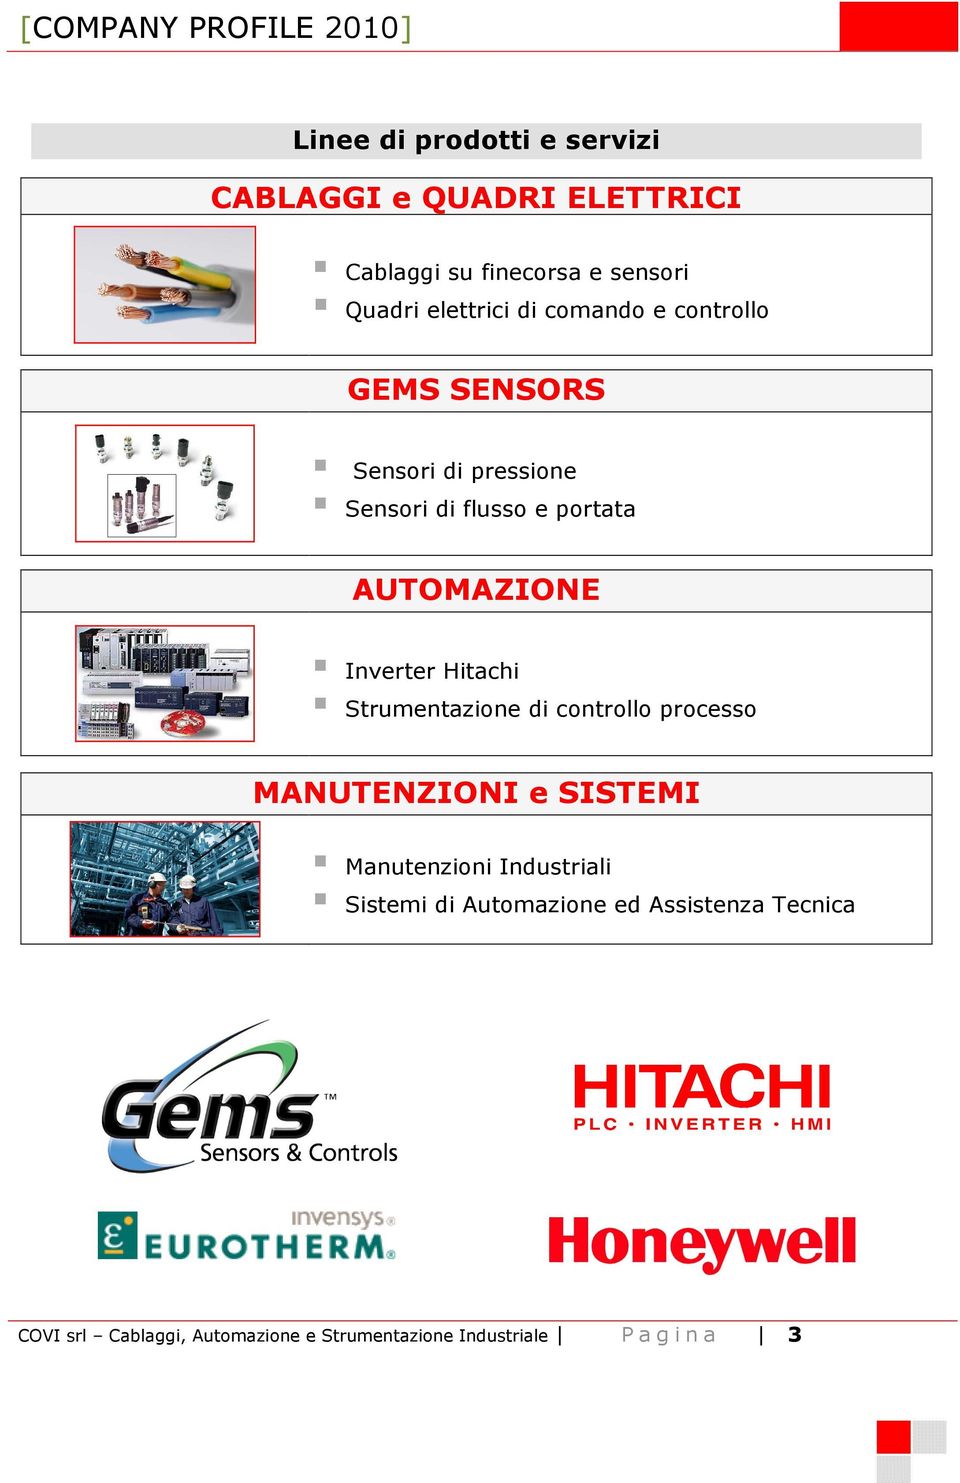 Hitachi Strumentazione di controllo processo MANUTENZIONI e SISTEMI Manutenzioni Industriali Sistemi di